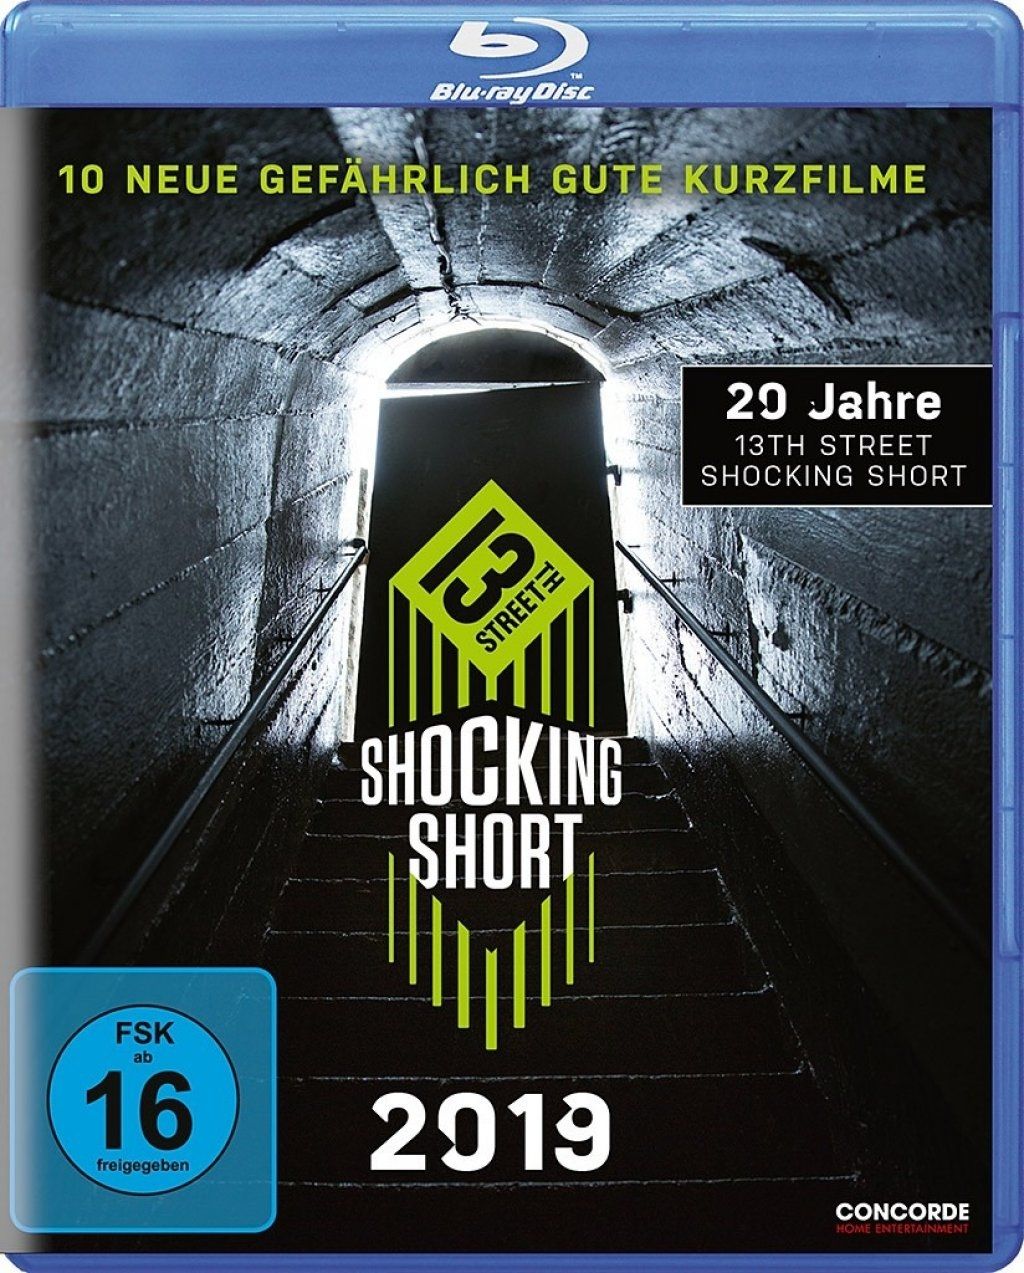 Shocking Shorts 2019 - 10 neue gefährlich gute Kurzfilme (BLURAY)